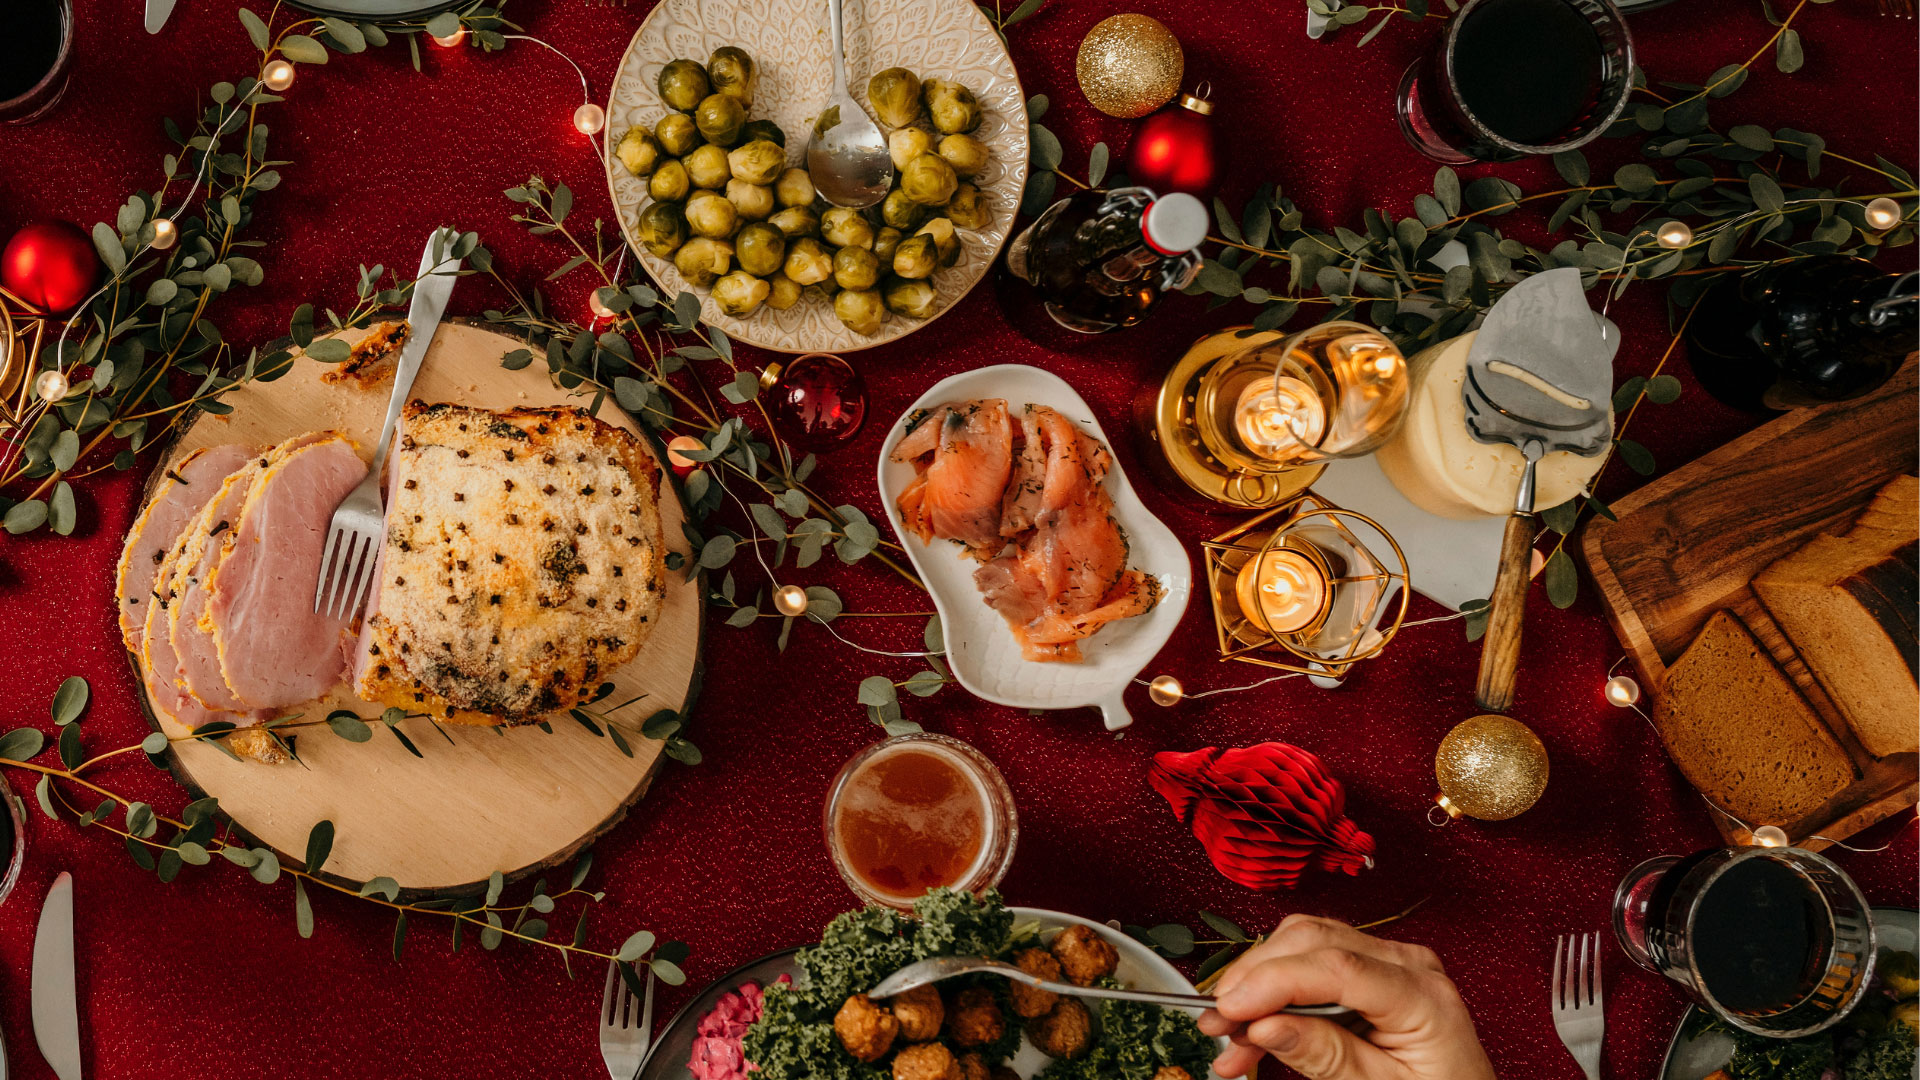 Sopravvivere ai pranzi natalizi: consigli pratici per una digestione serena durante le feste